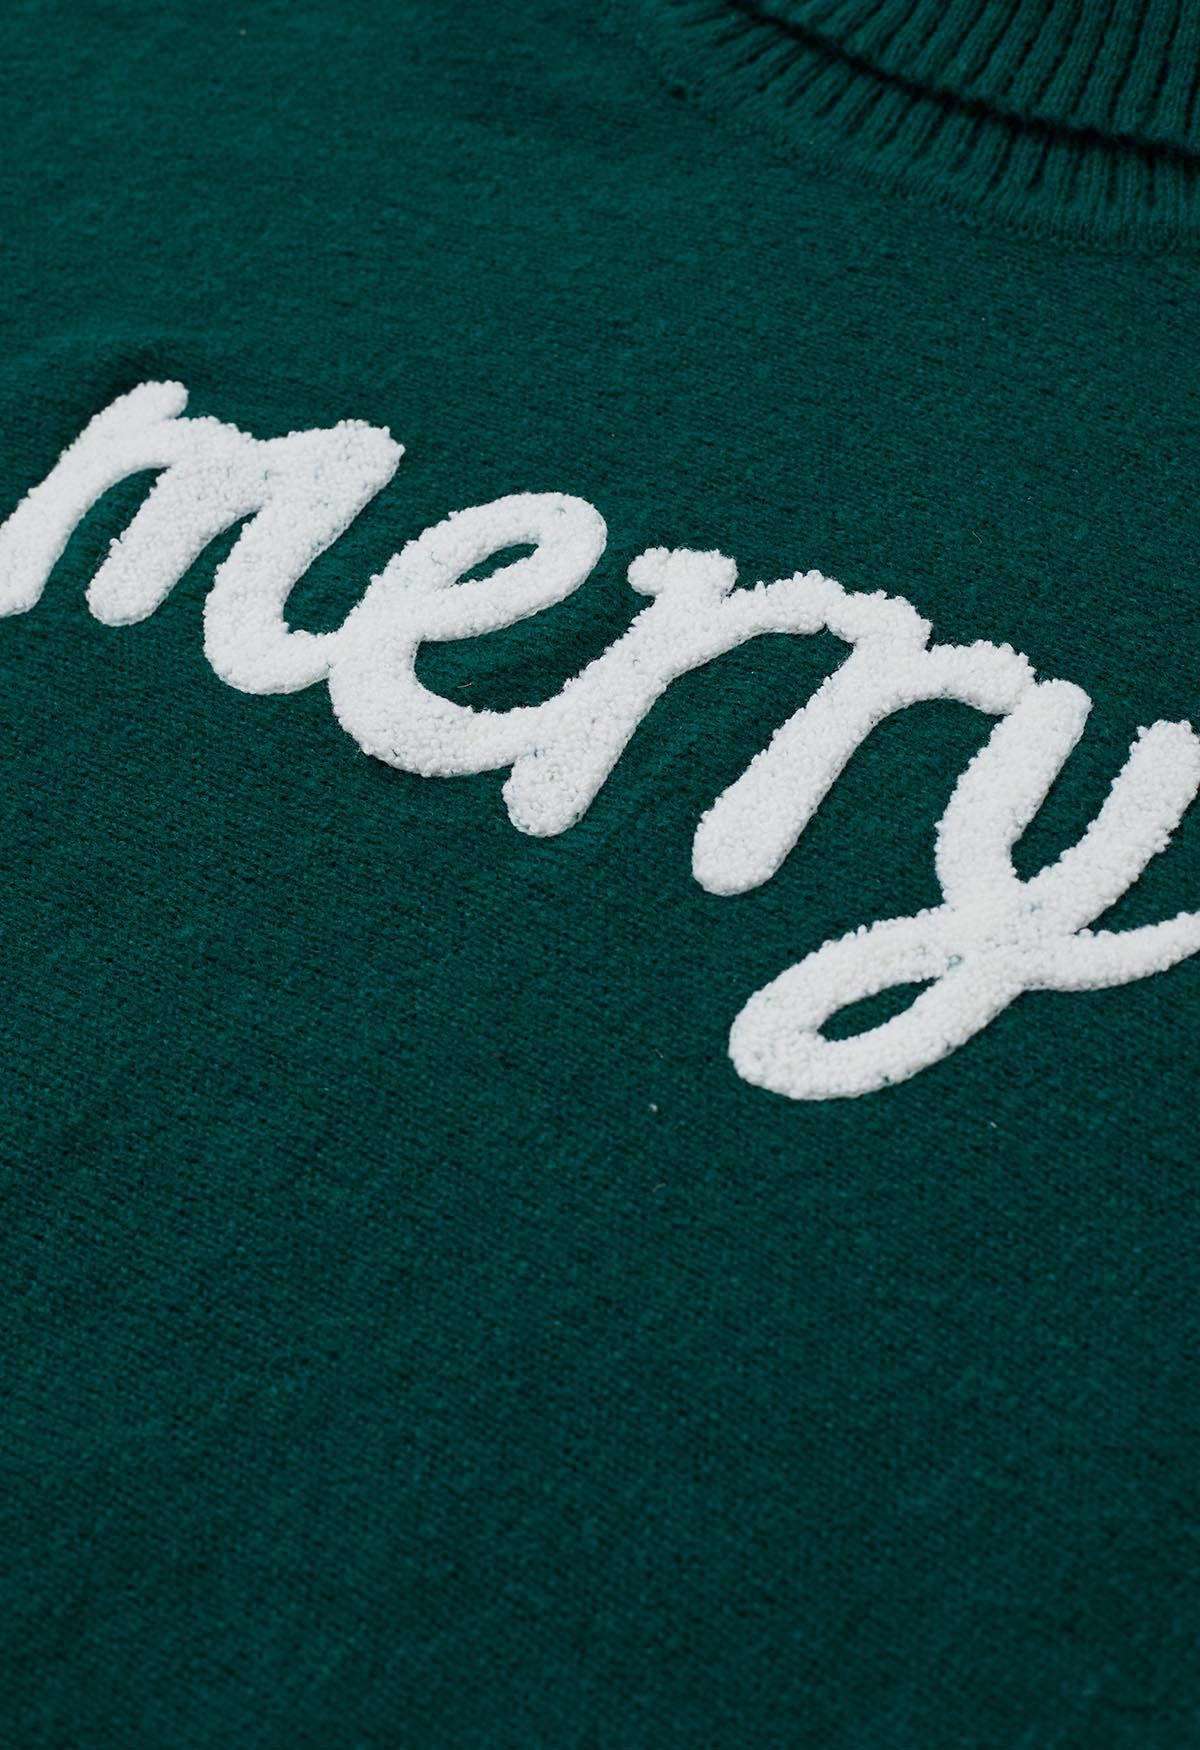 Merry - Pull en tricot à col roulé et manches chauve-souris en vert foncé